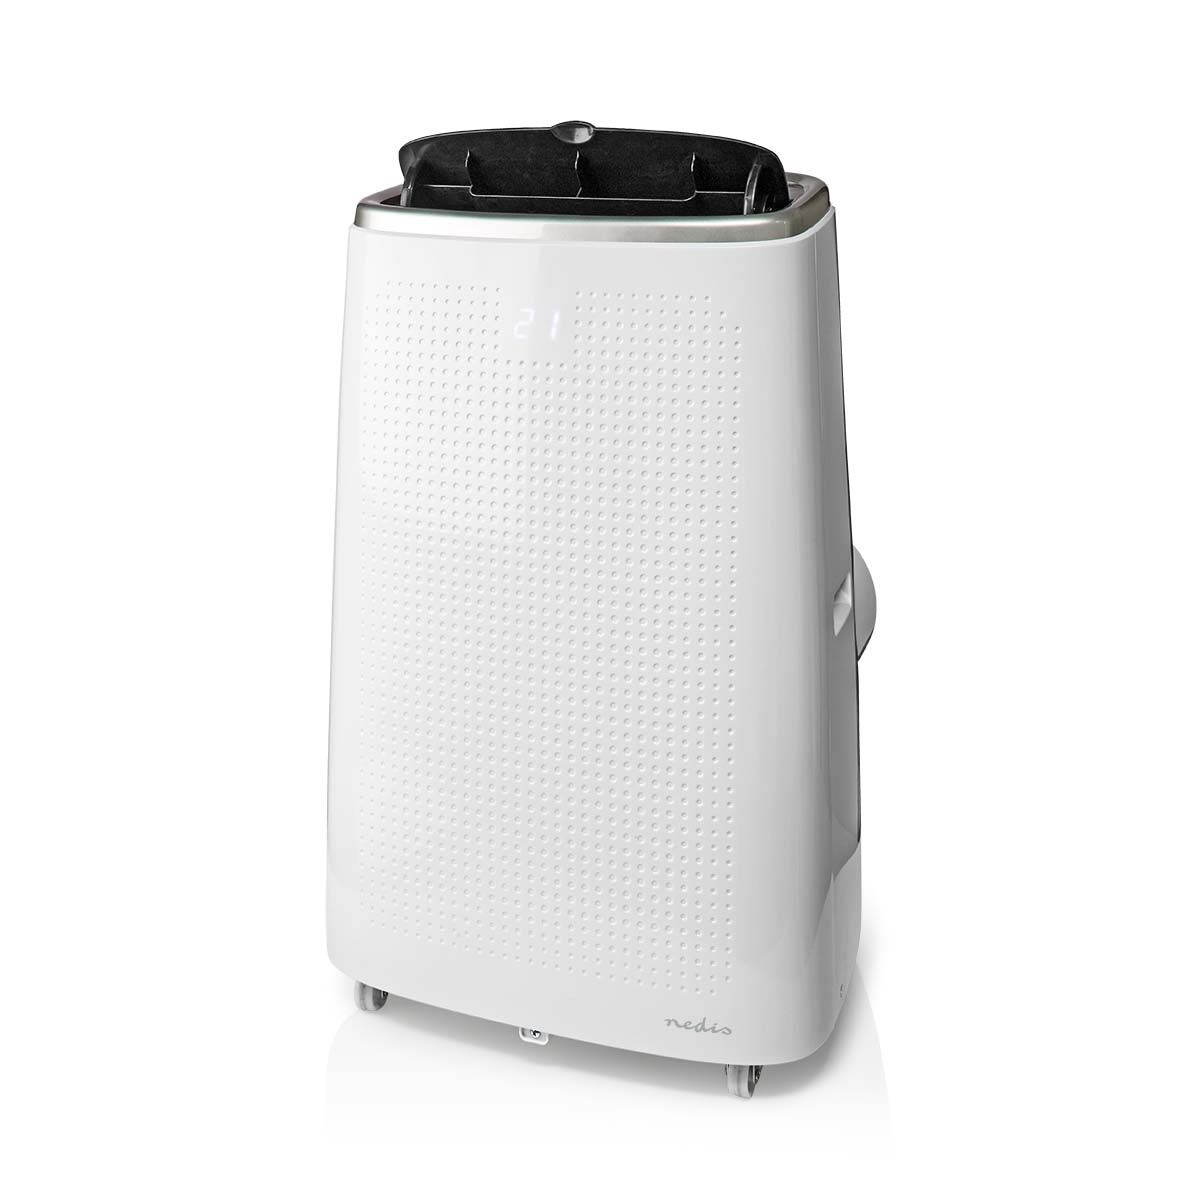 Nedis SmartLife Airconditioner